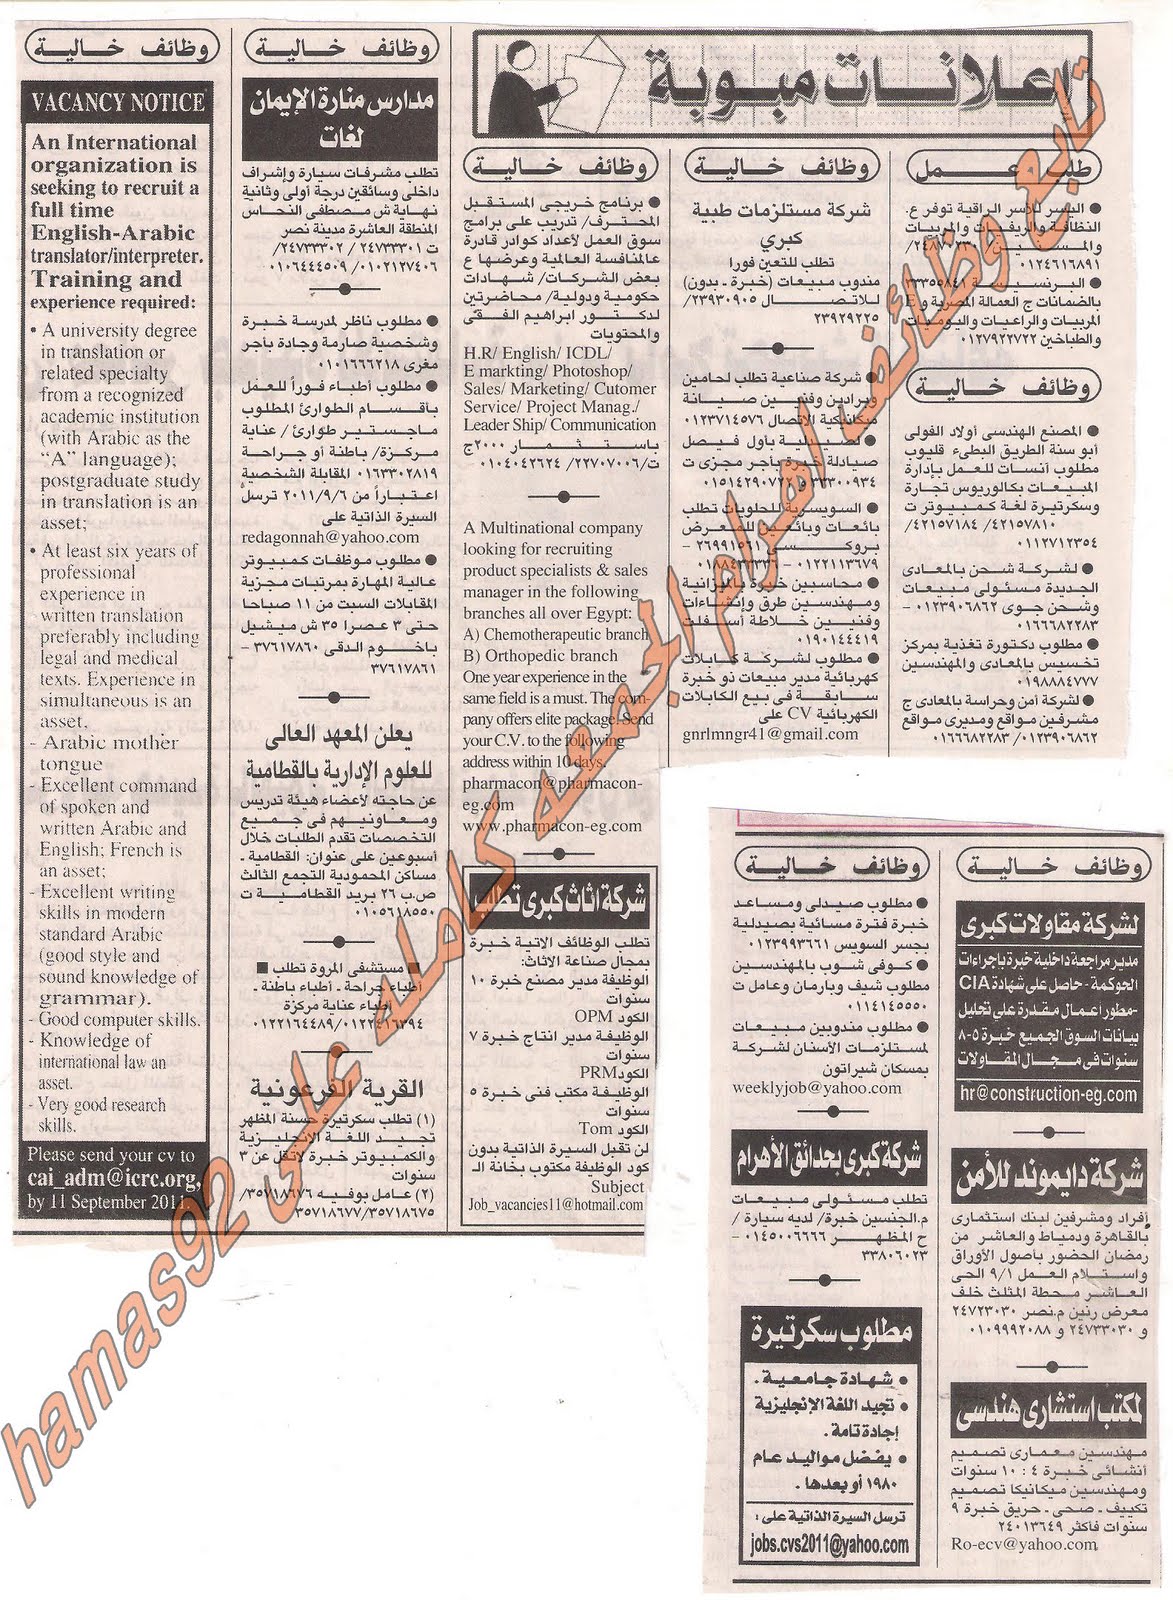 وظائف جريدة الاهرام الجمعة 26 اغسطس 2011 Picture+002